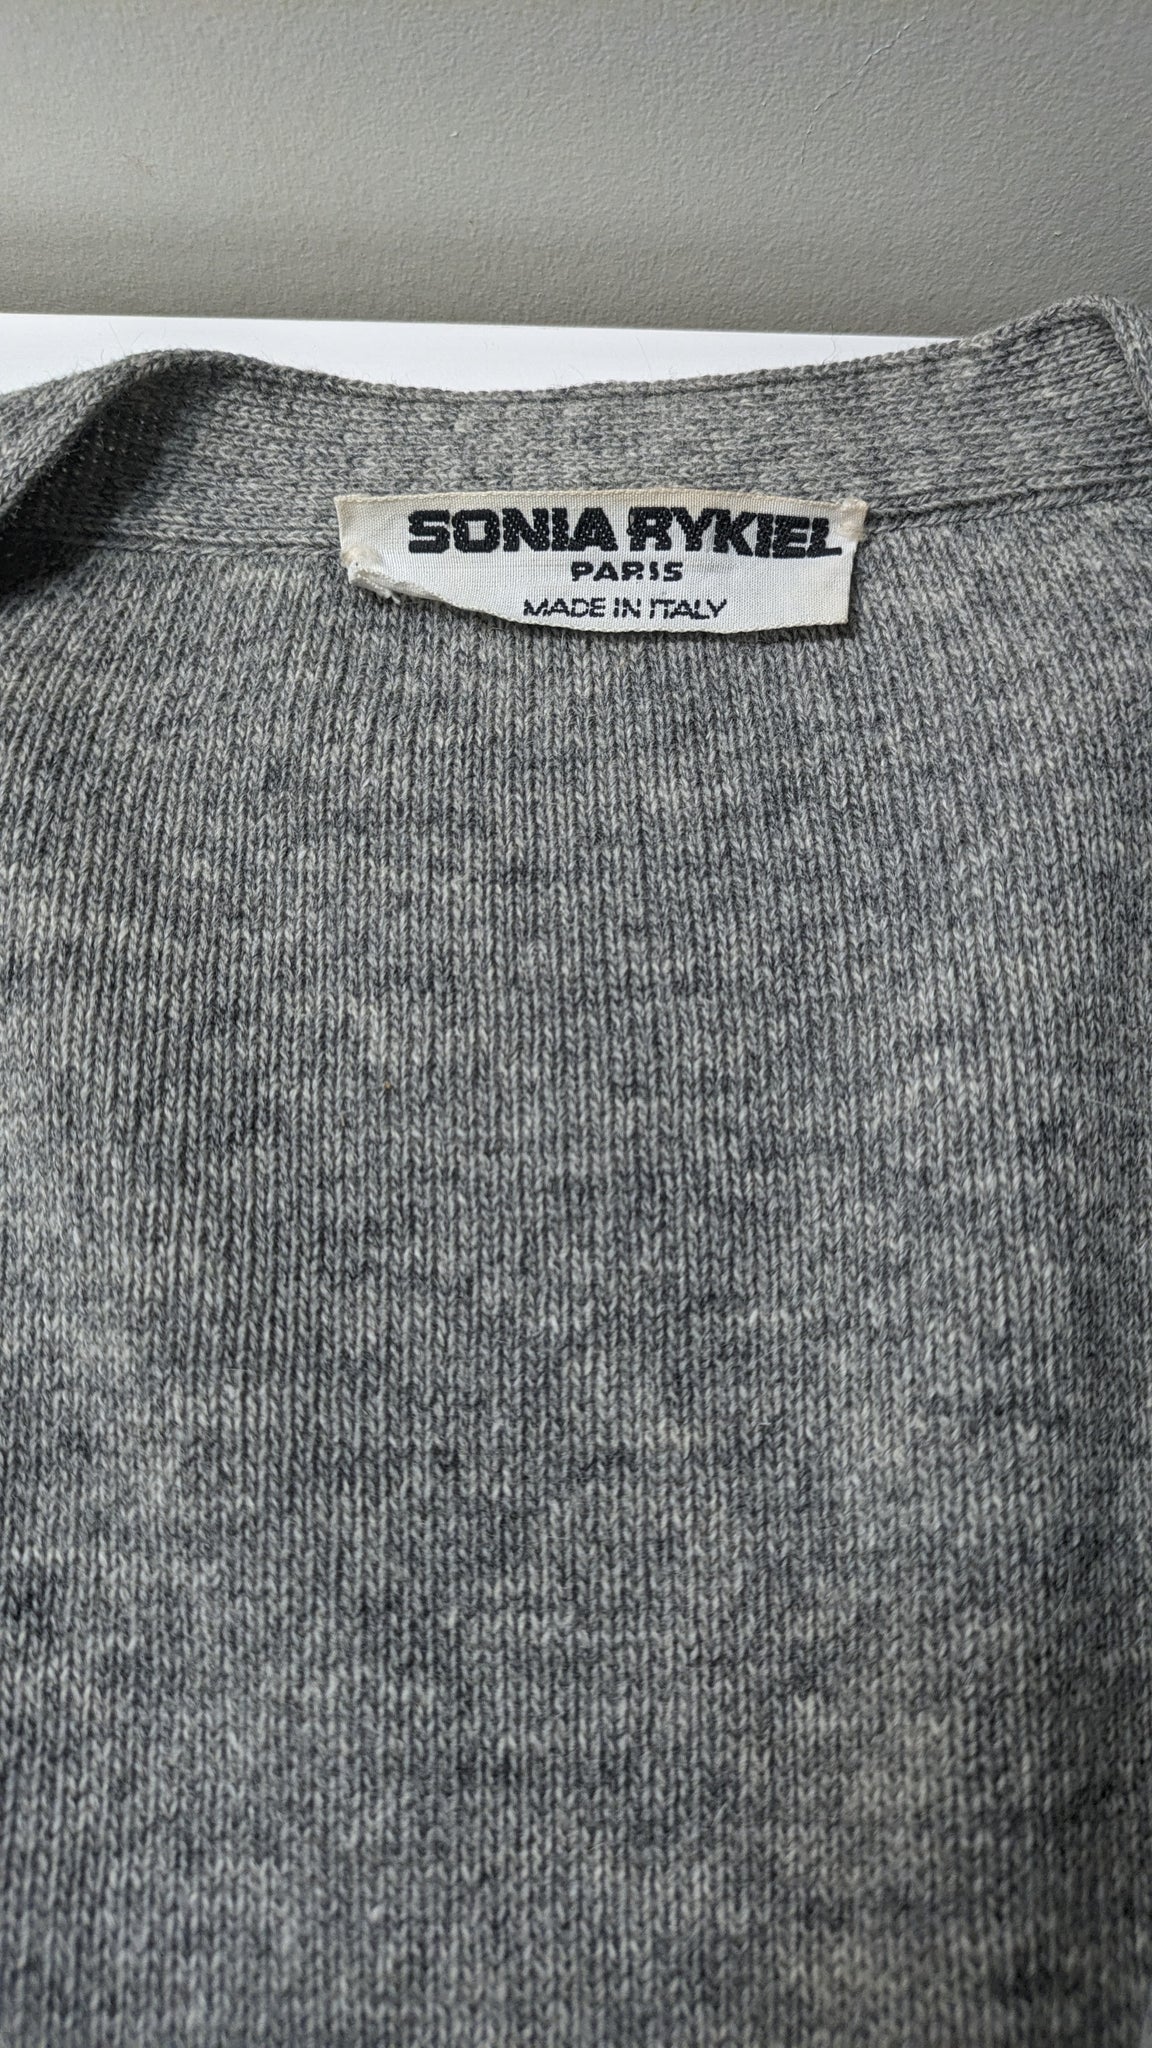 1980s Sonia Rykiel cardigan with novelty pockets - O/S